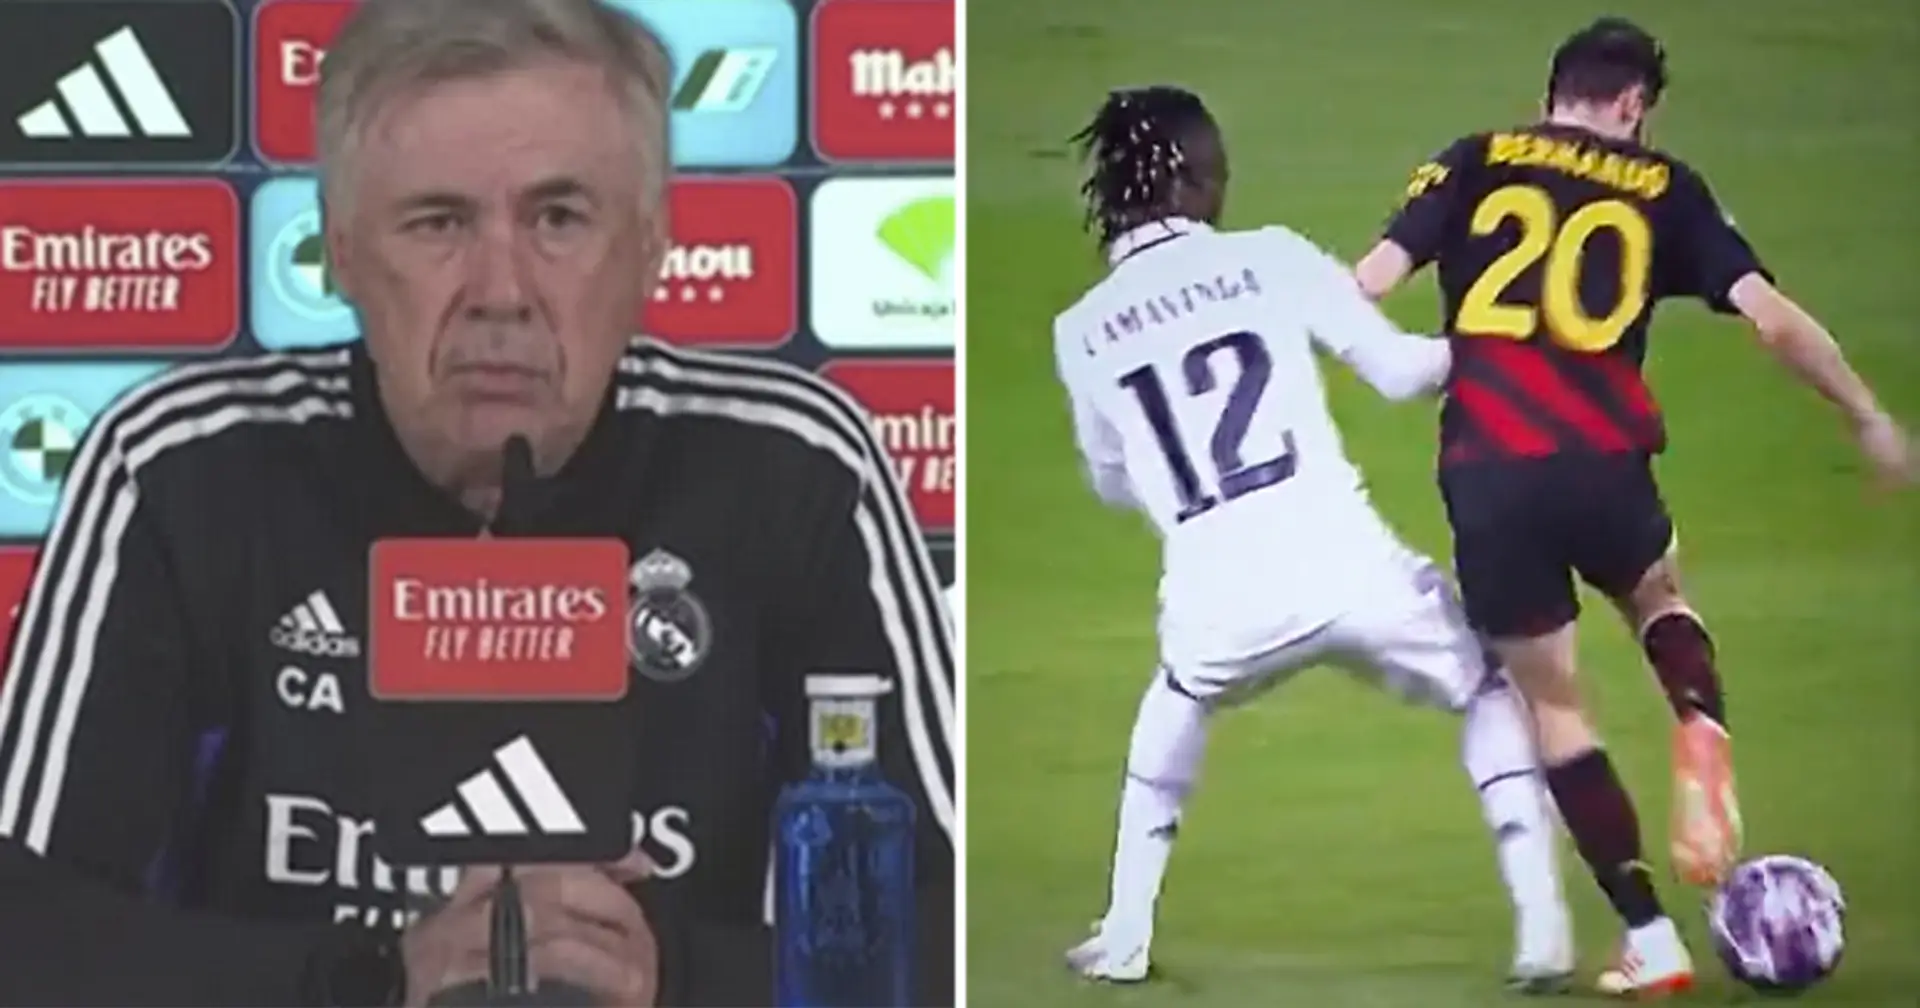 Ancelotti möchte, dass ein Spieler von Real Madrid bleibt - Verein erwägt, ihn zu verkaufen